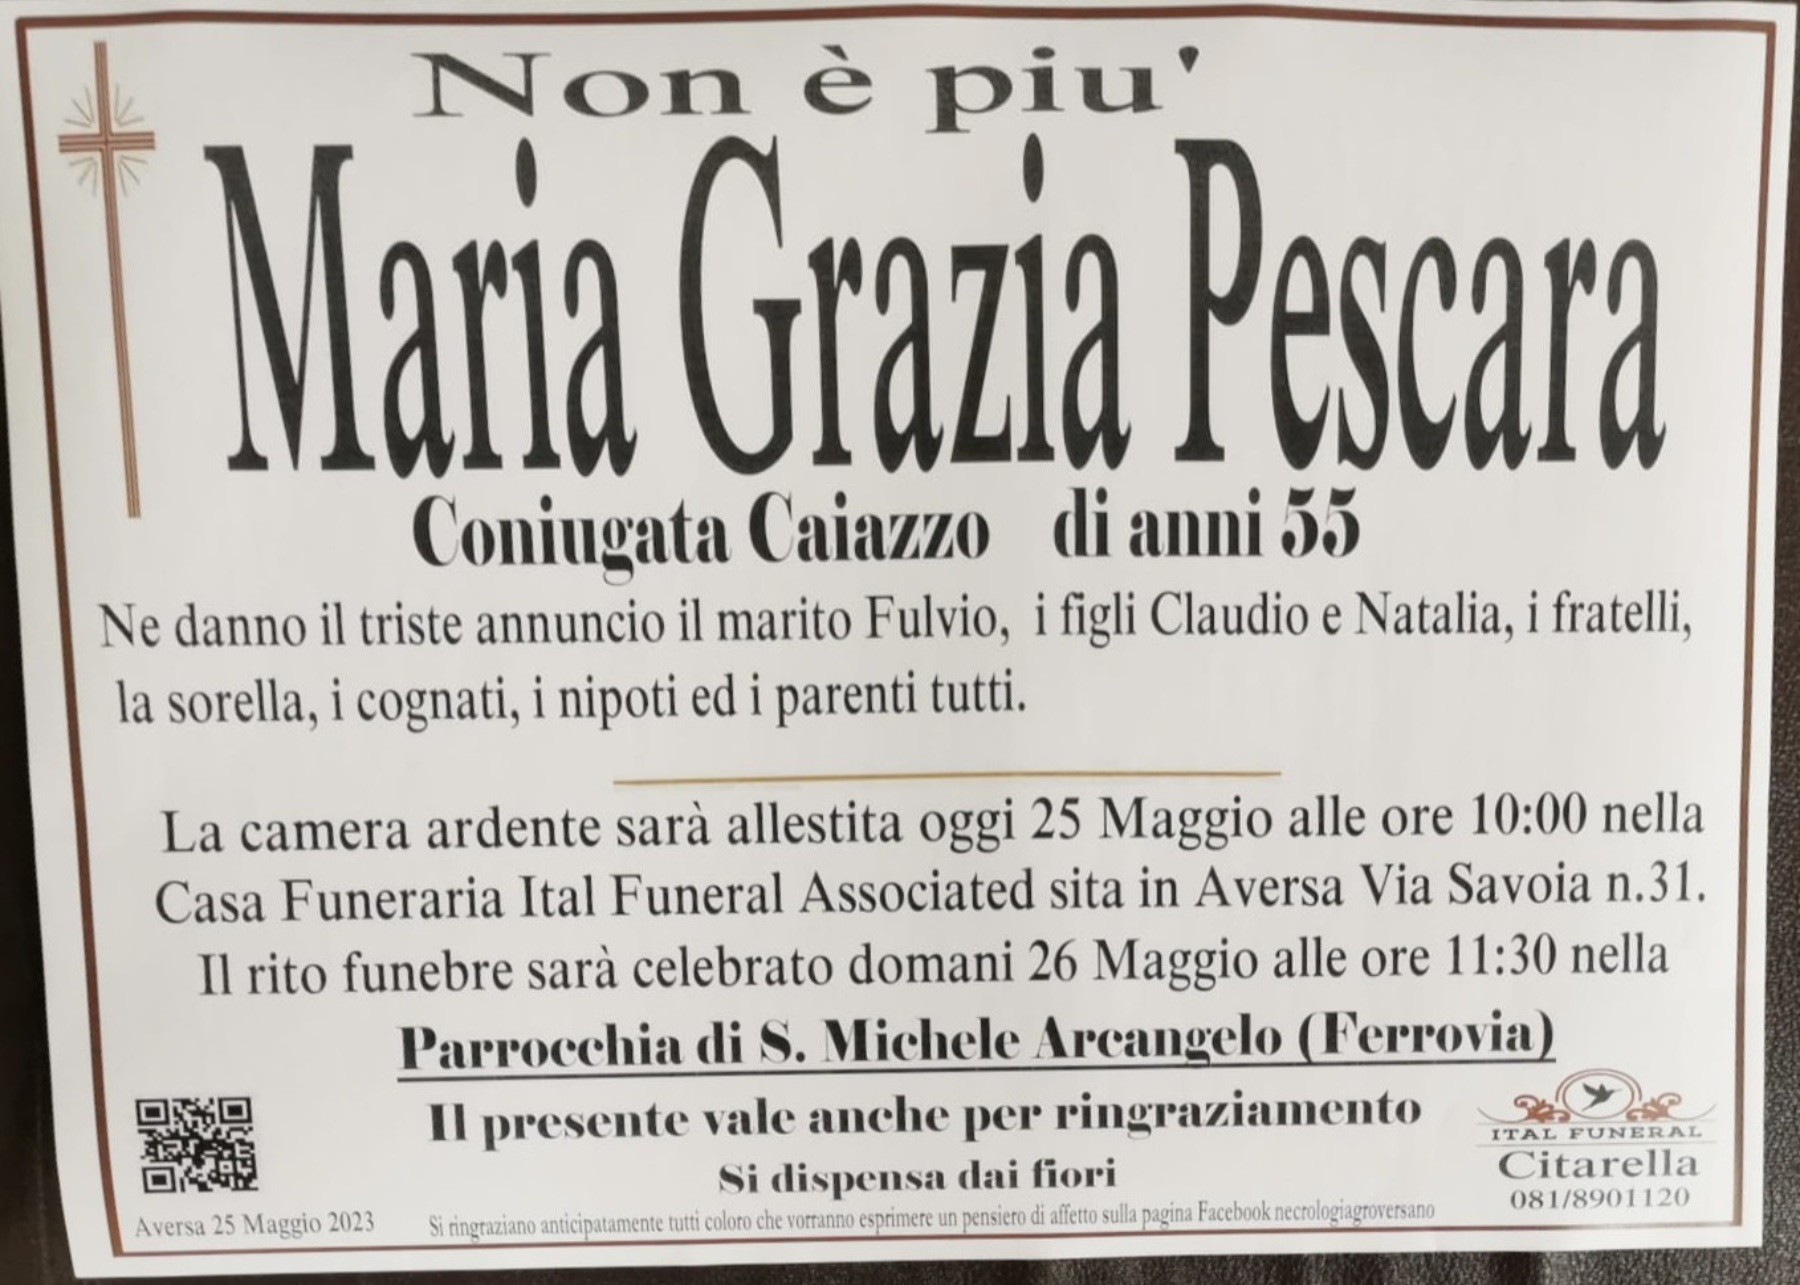 Maria Grazia Pescara